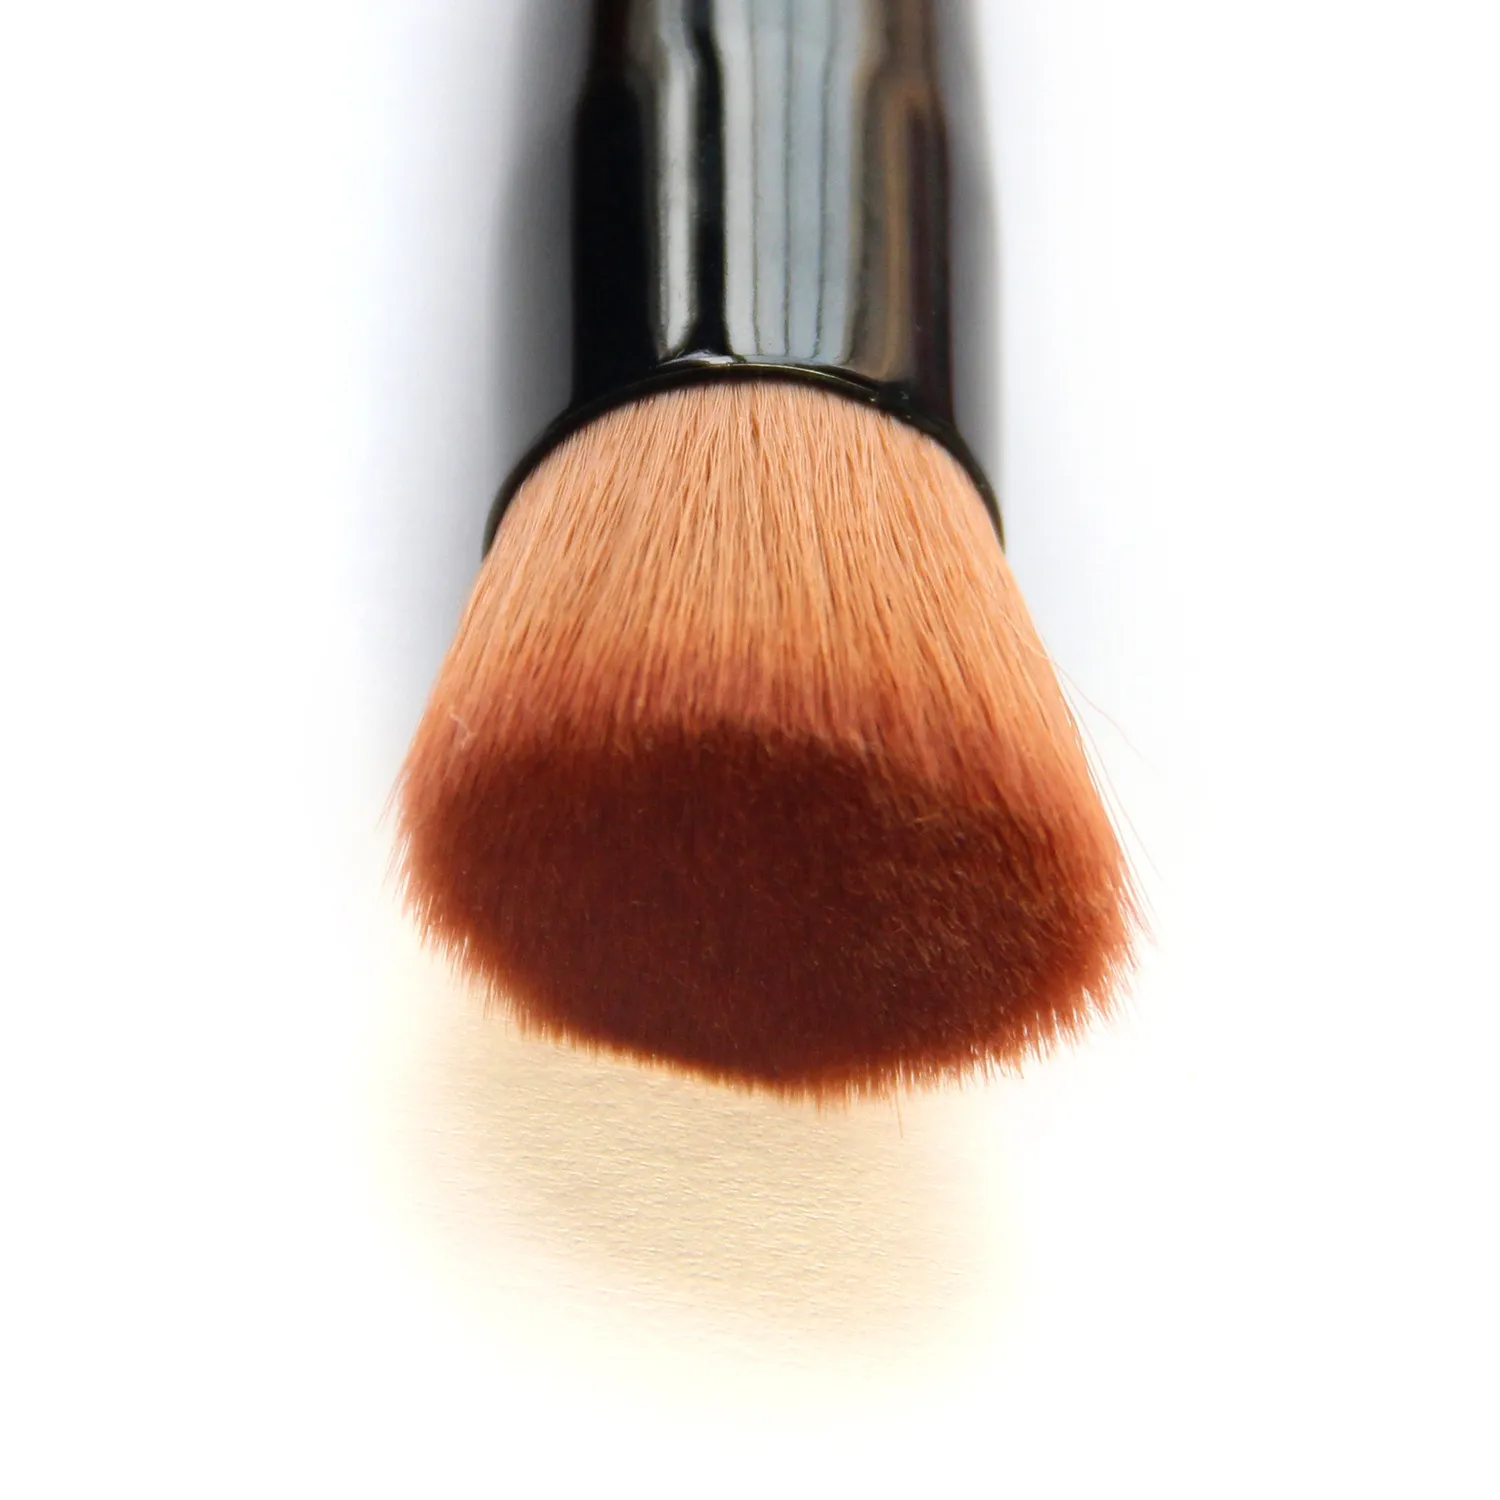 Multifunctionele Pro Make-up Borstels Poeder Concealer Blush Foundation Make Up Brush Set Houten Kabuki Borstel Cosmetica DHL 